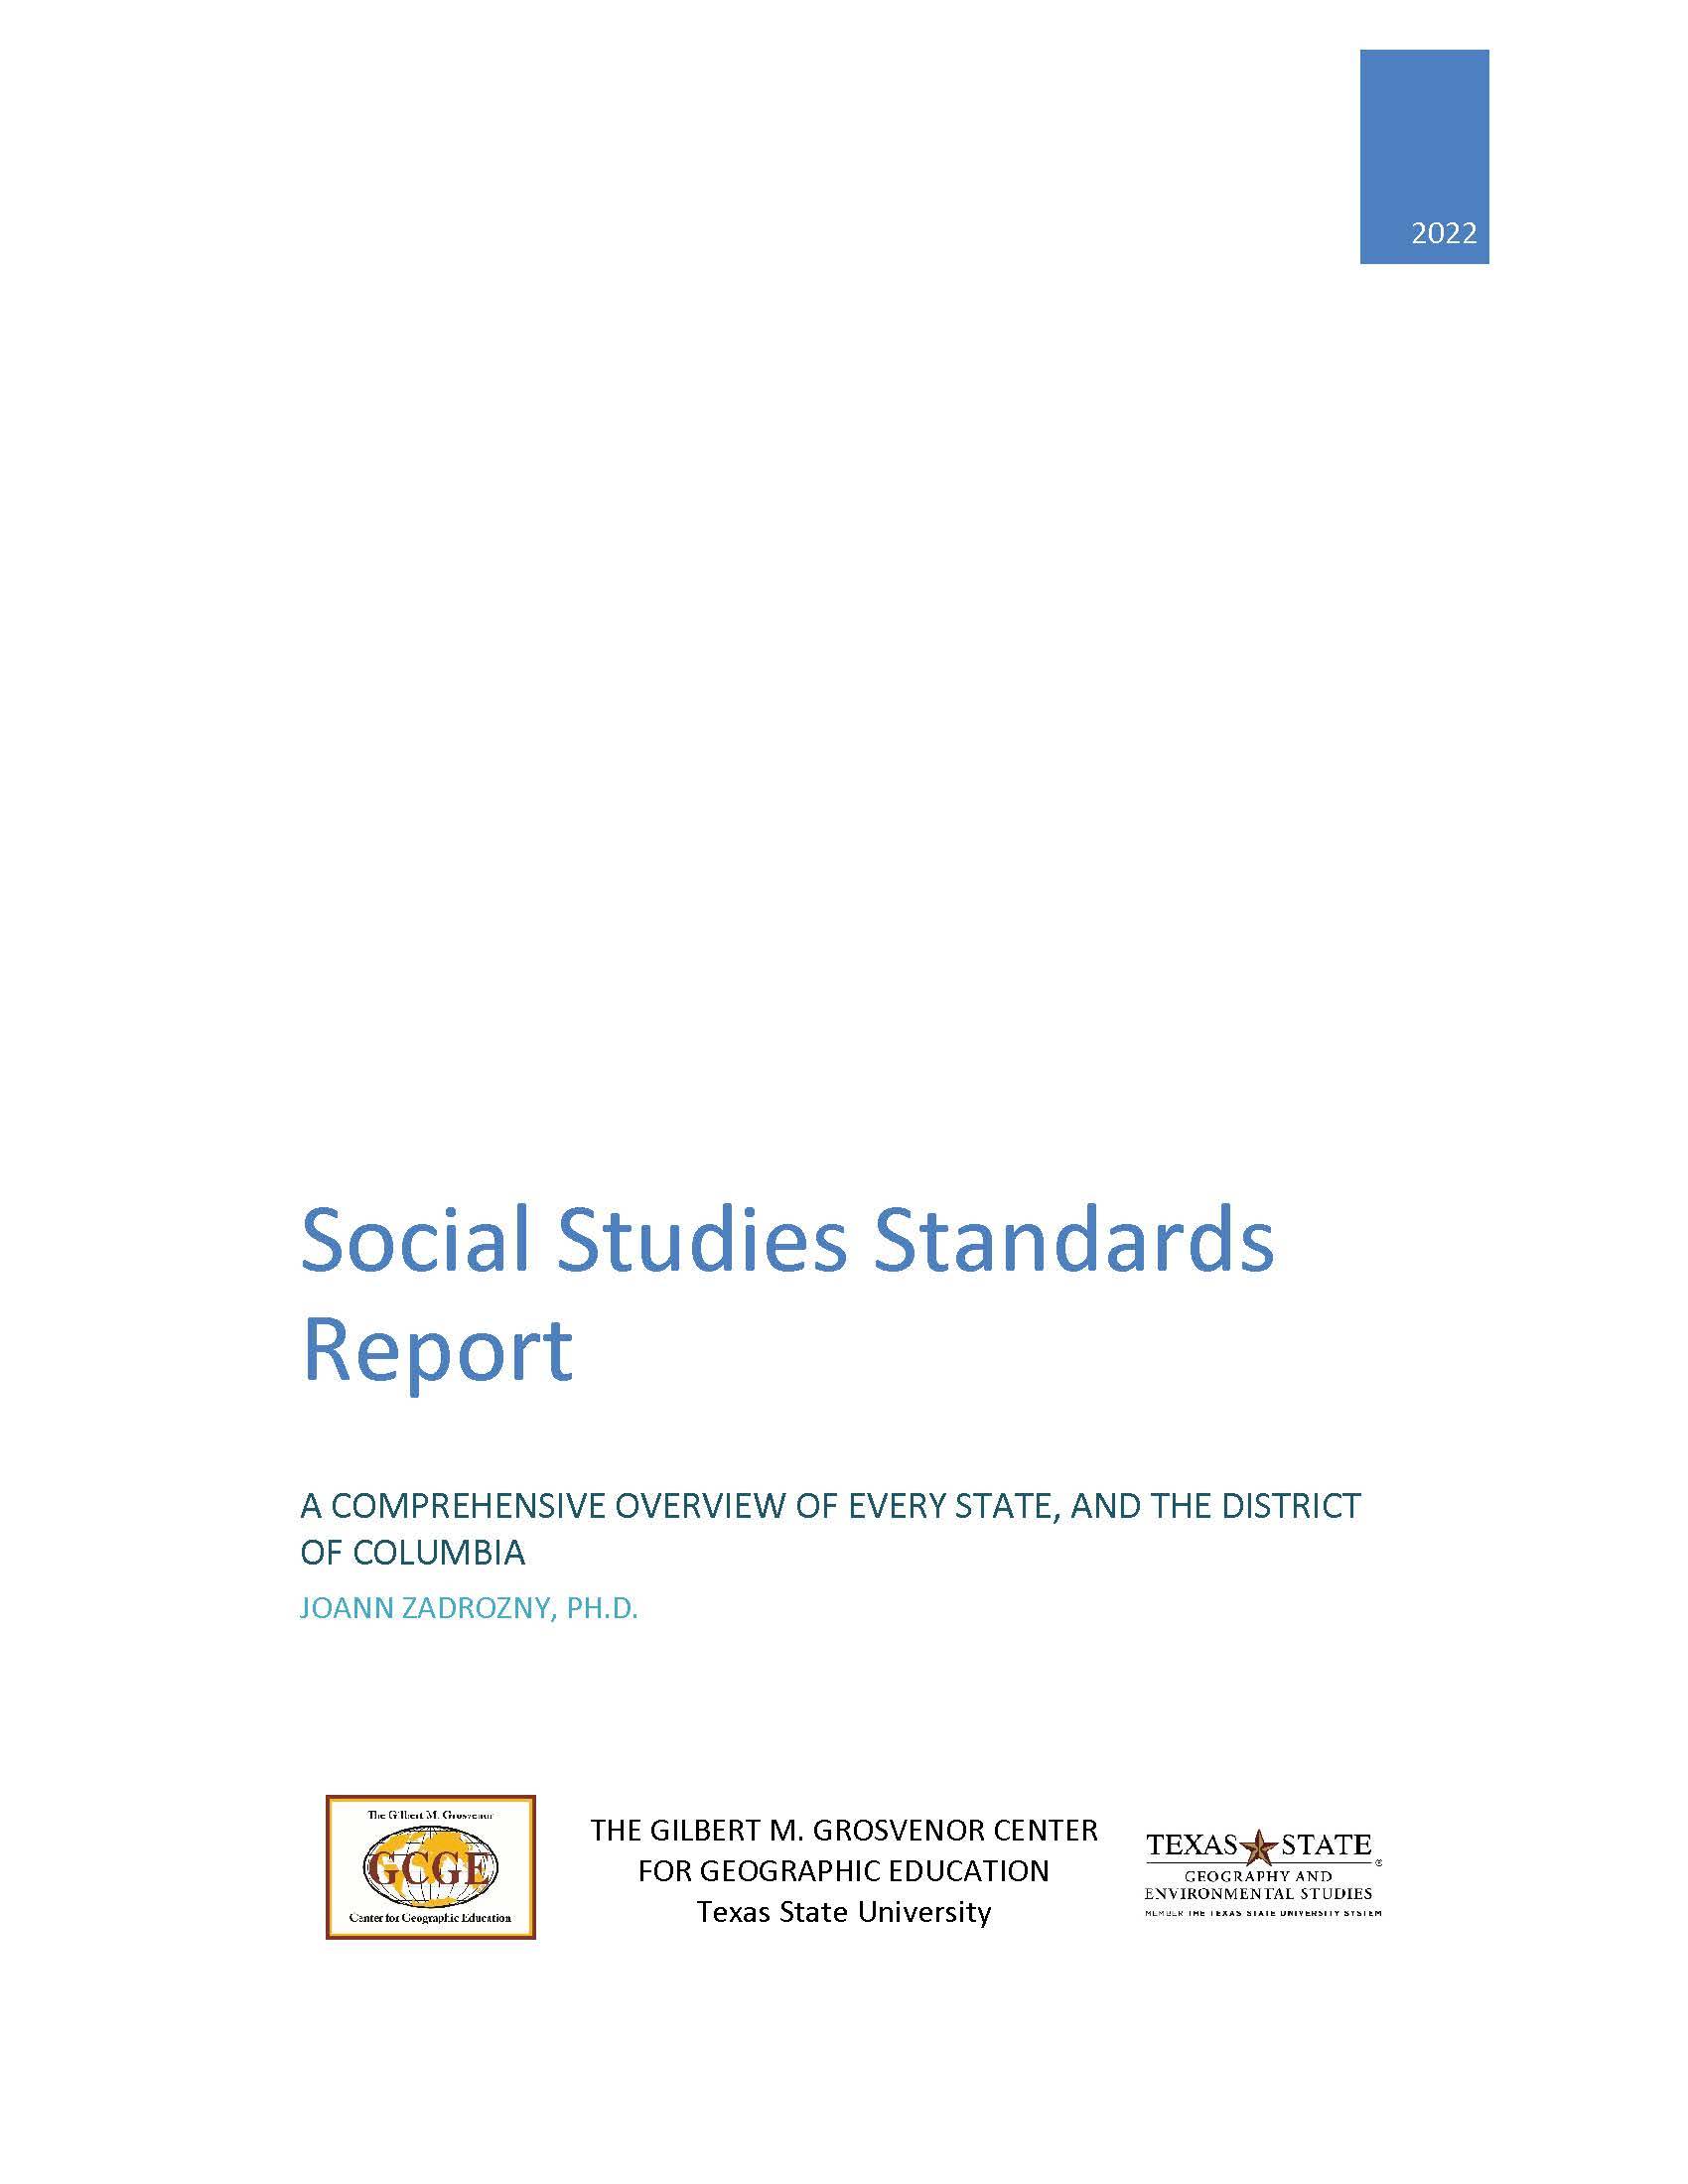 Social Studies Standards Report